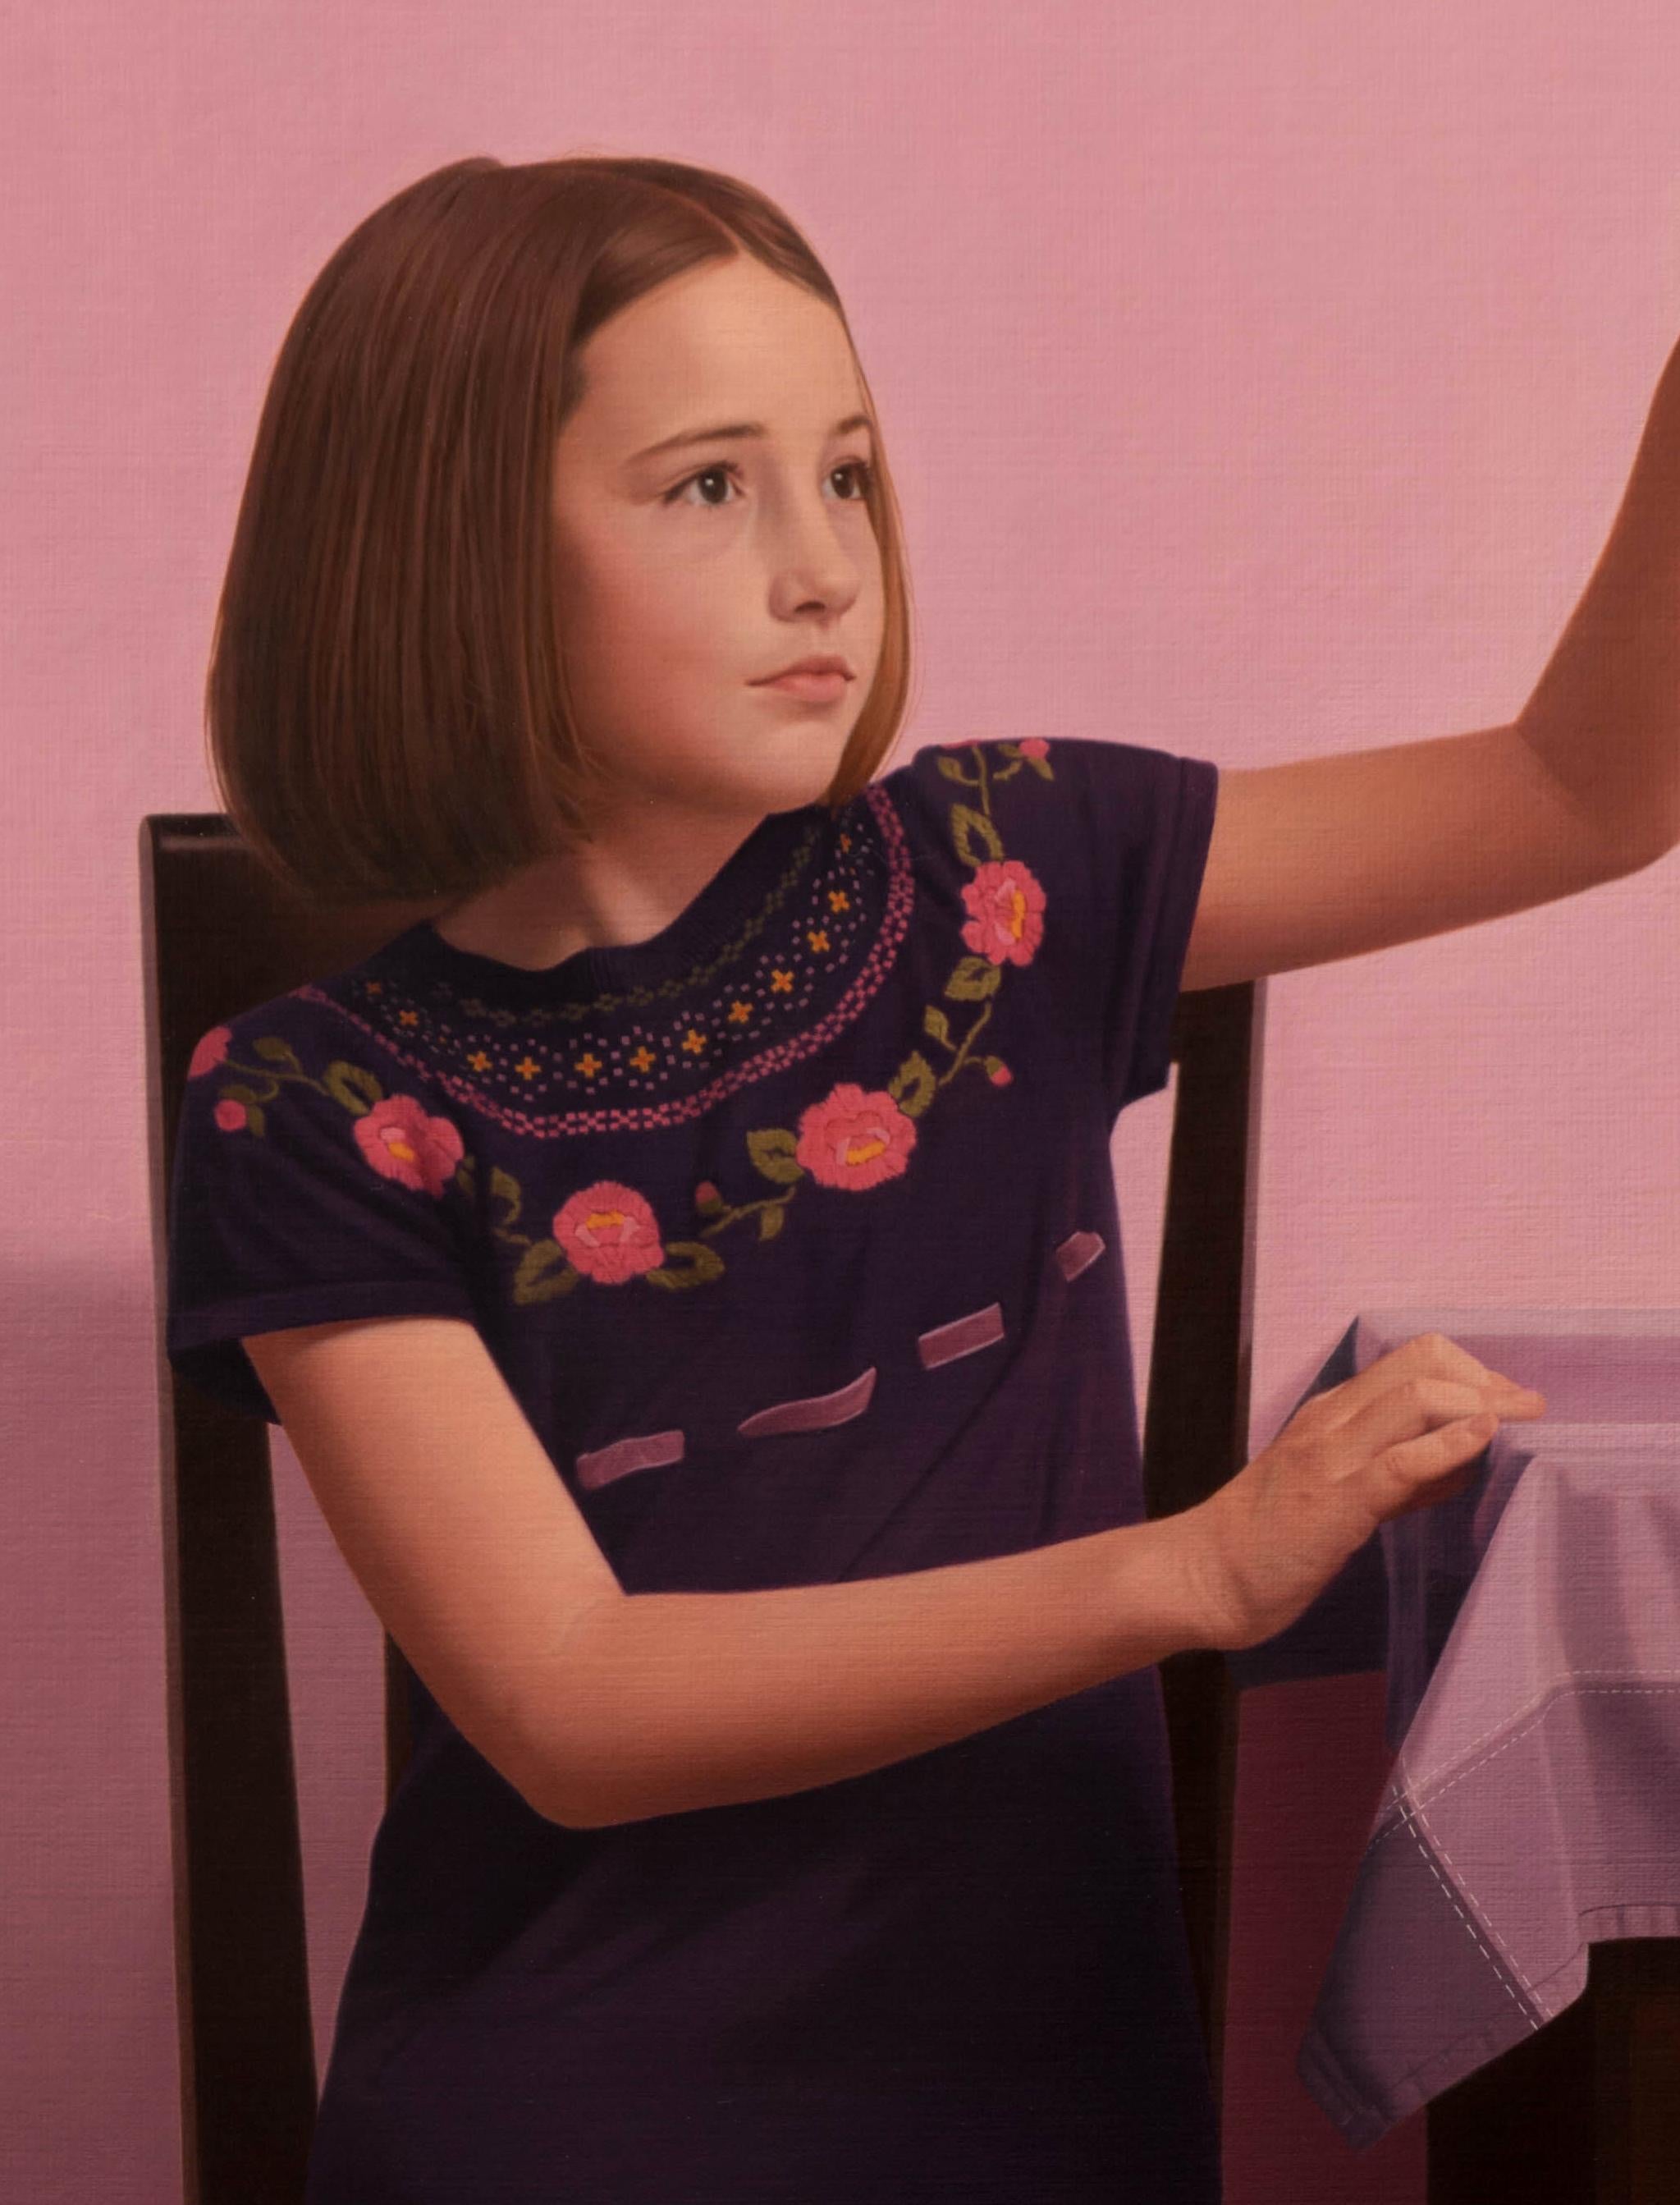 Gerberas - Zeitgenössisches figuratives Ölgemälde, realistisches kleines Mädchenporträt – Painting von Kamil Lisek